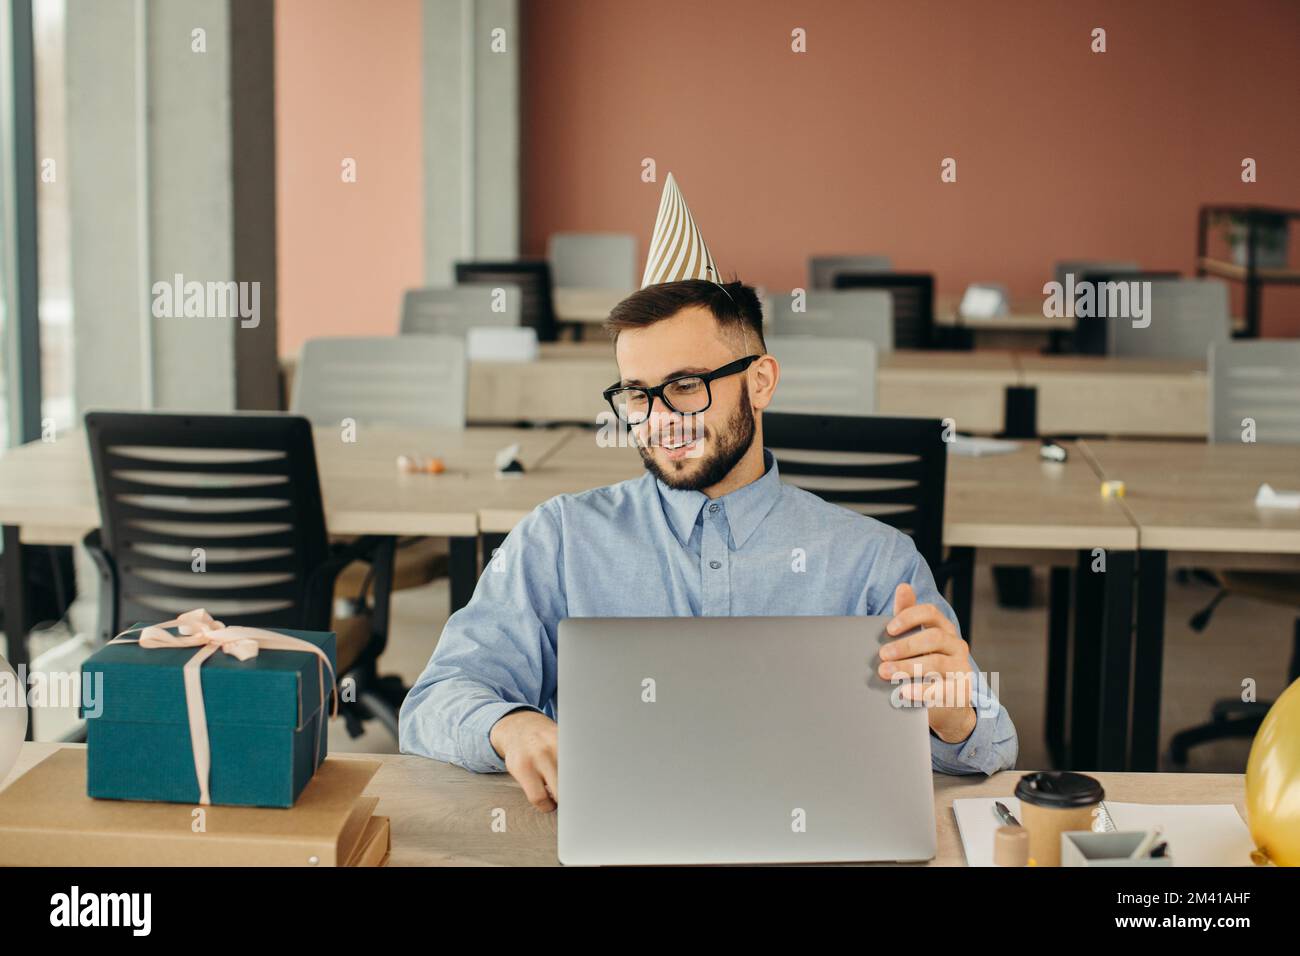 Nach der Geburtstagsparty. Büroangestellter mit Bart und Hut sitzt am Arbeitsplatz mit Laptop und Geschenk mit festlichem Band. Stockfoto